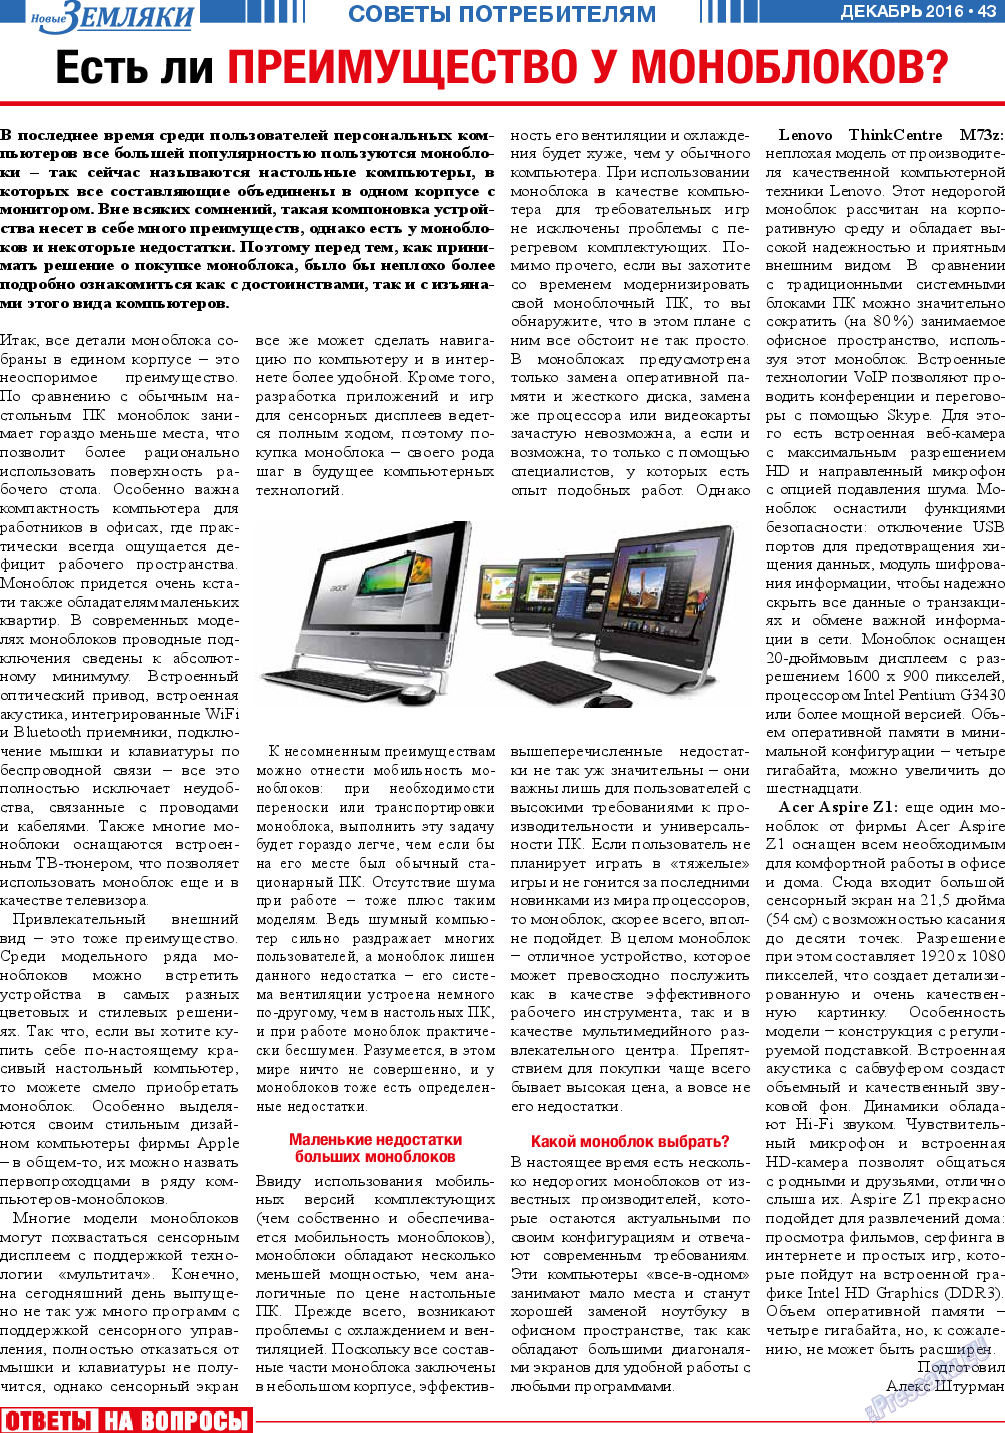 Новые Земляки (газета). 2016 год, номер 12, стр. 43